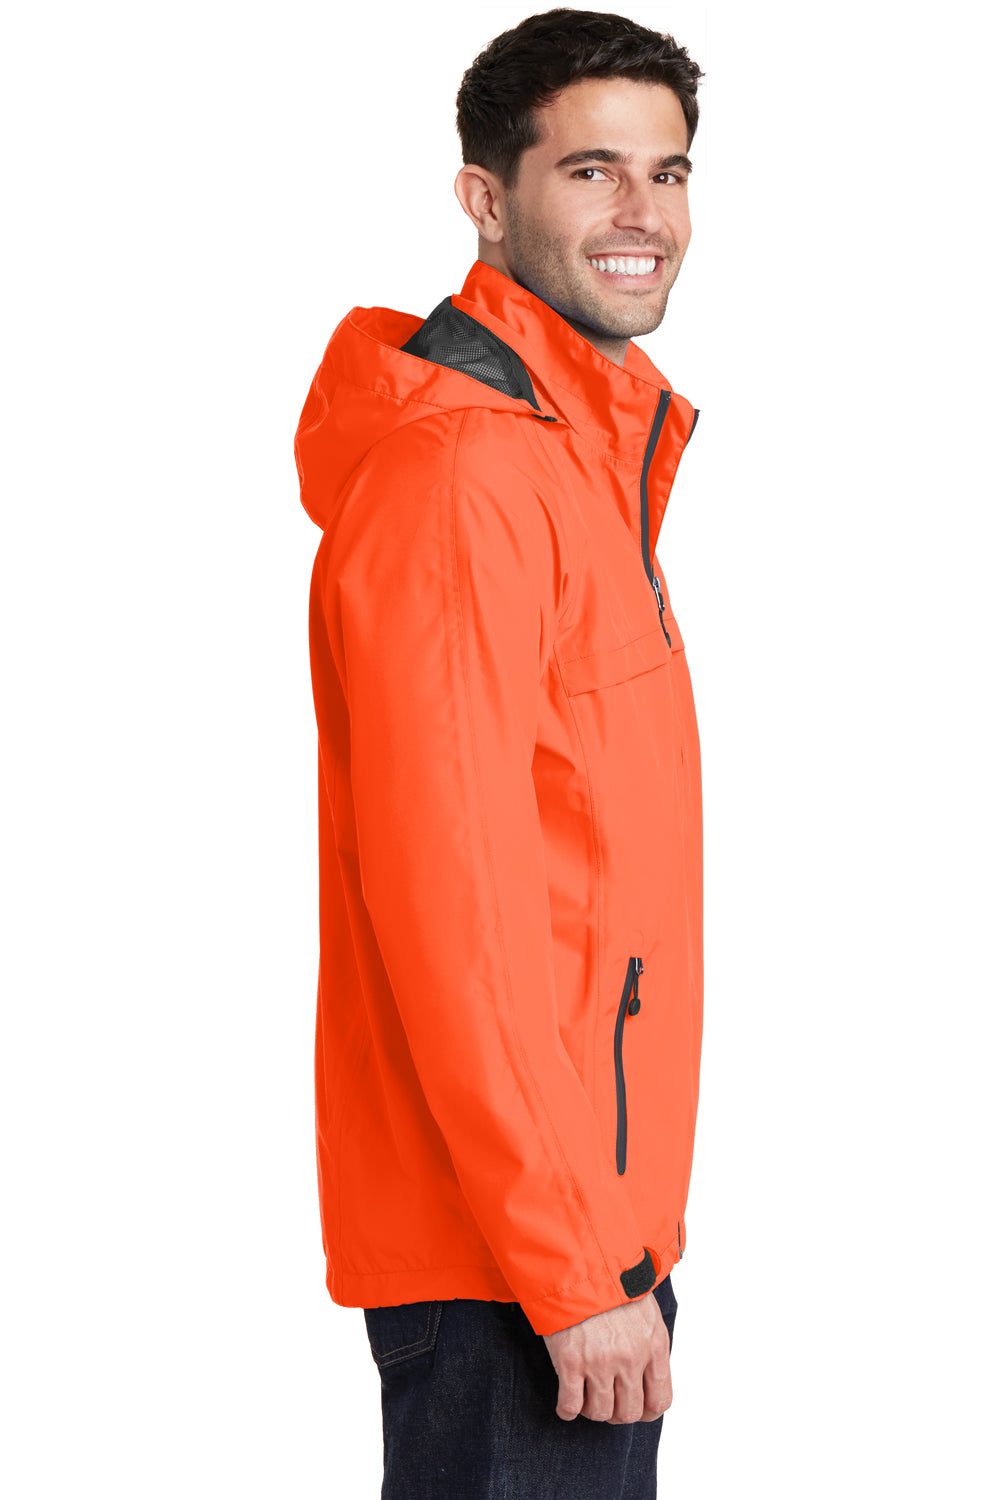 Port Authority J333 Mens Torrent Waterproof Full Zip Hooded Jacket Orange Side